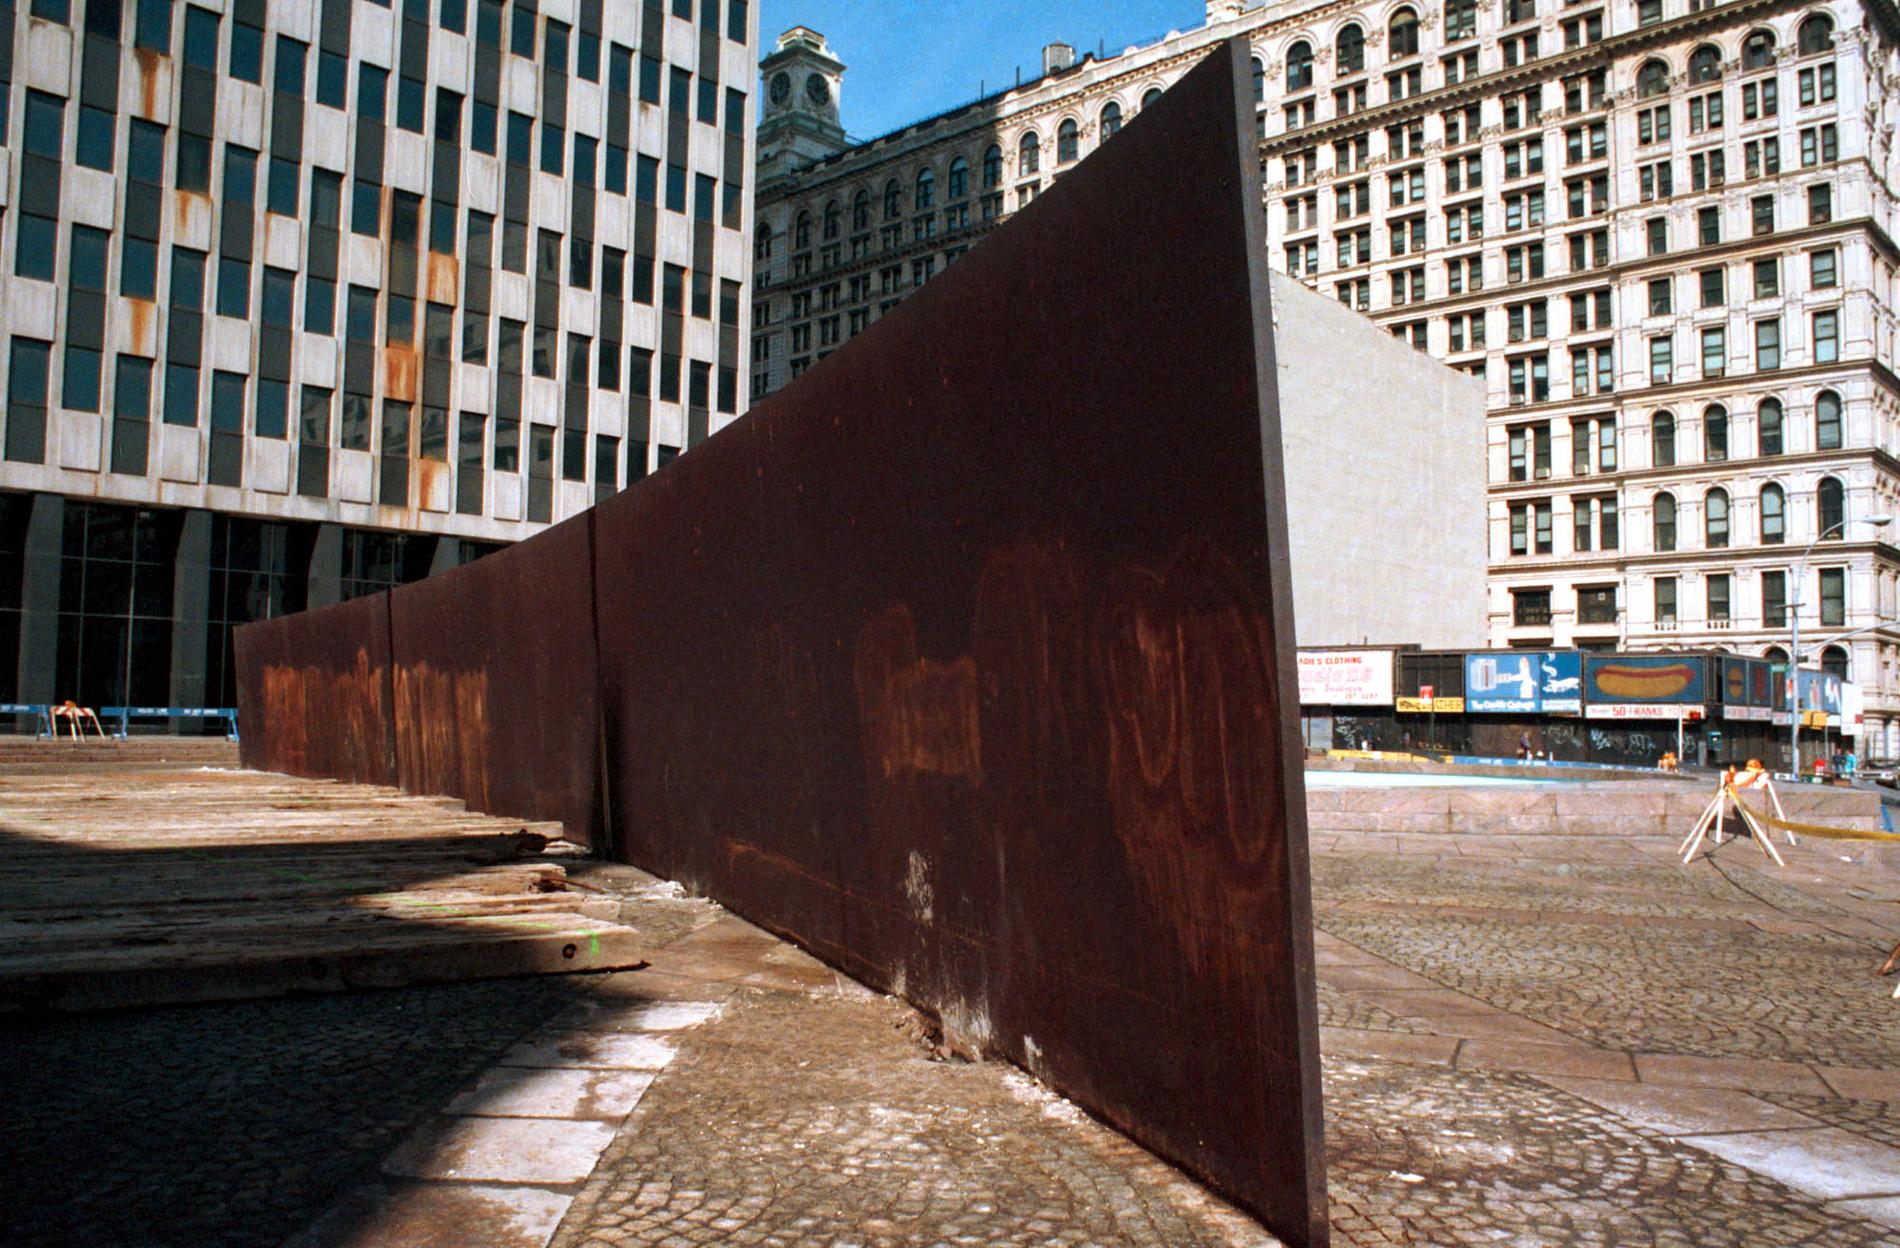 Serras skulptur "Tilted Arc" installerades på Federal Plaza i New York 1981. Skulpturen plockades senare, efter protester mot dess placering, bort. Arkivbild.